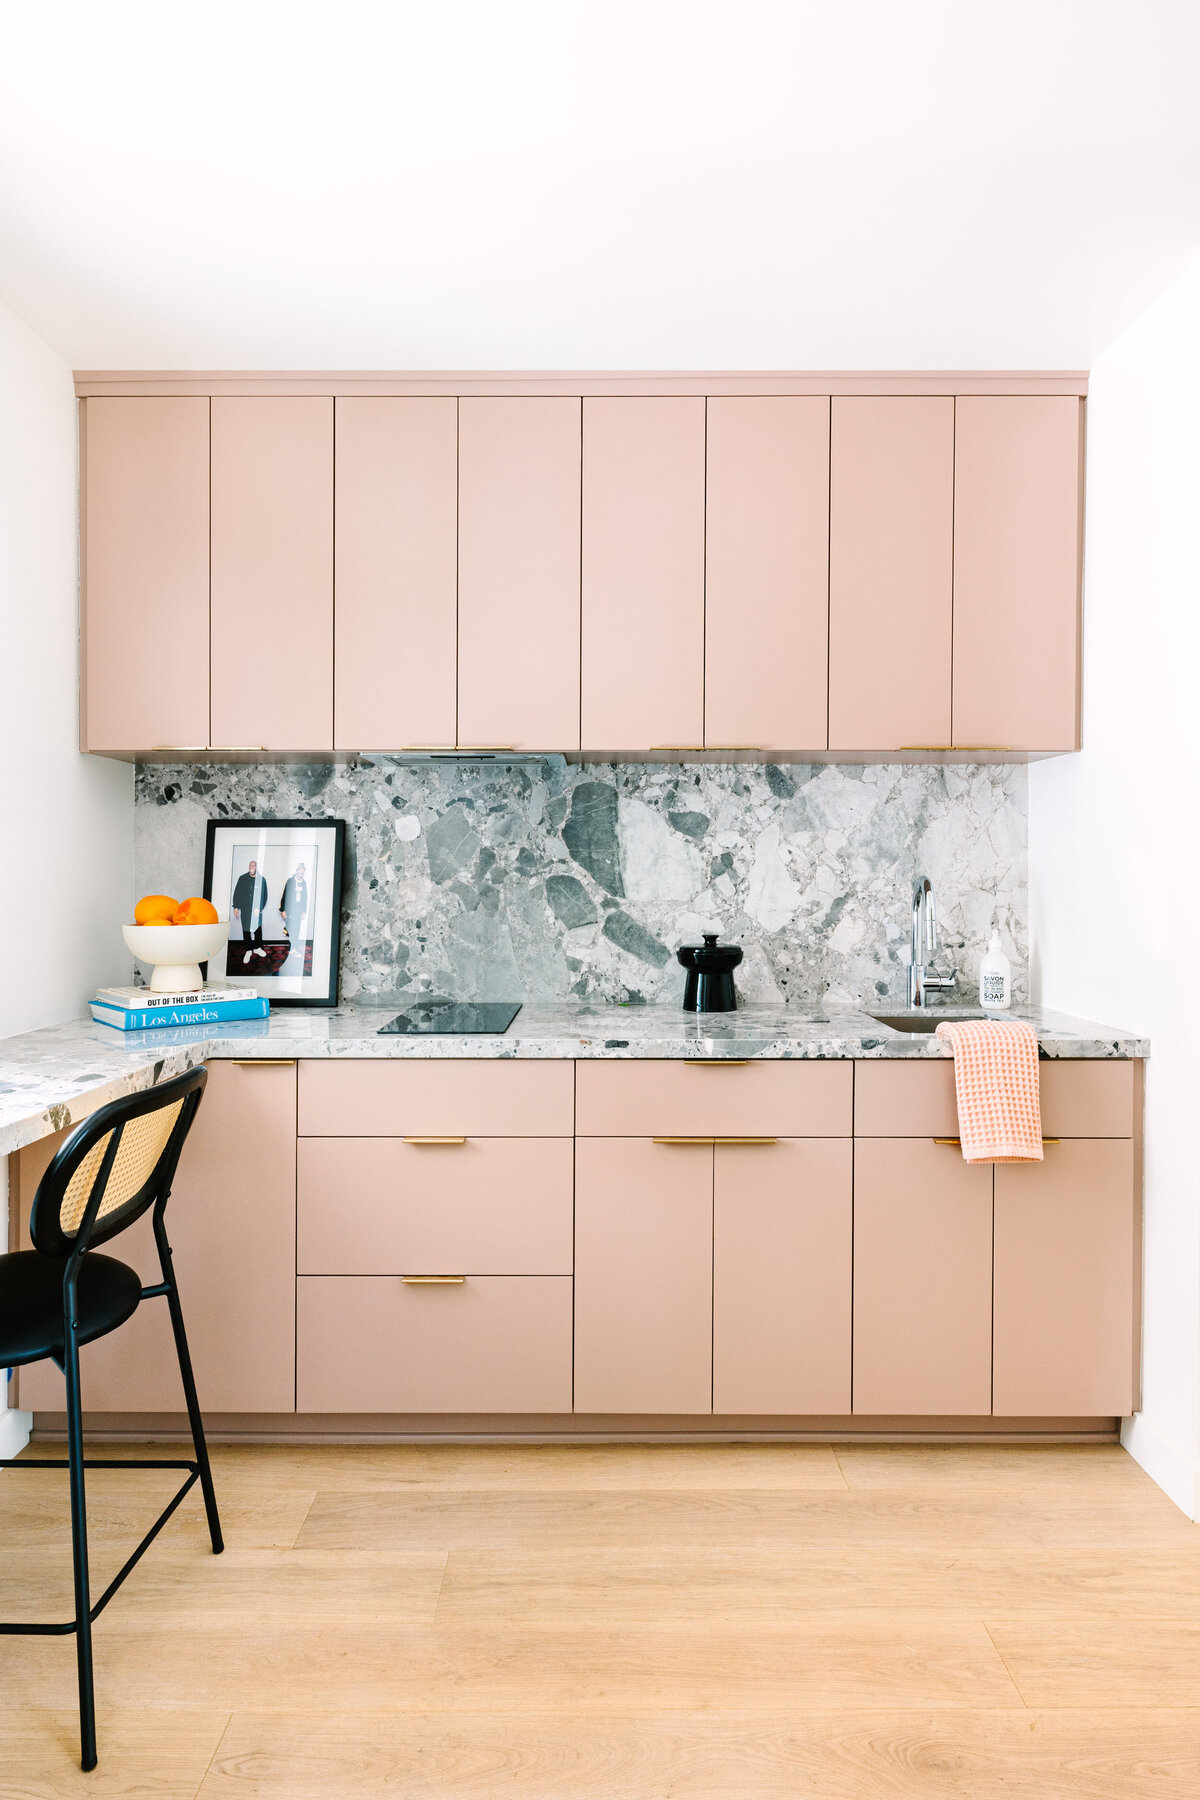 Flat panel blush pink cabinets